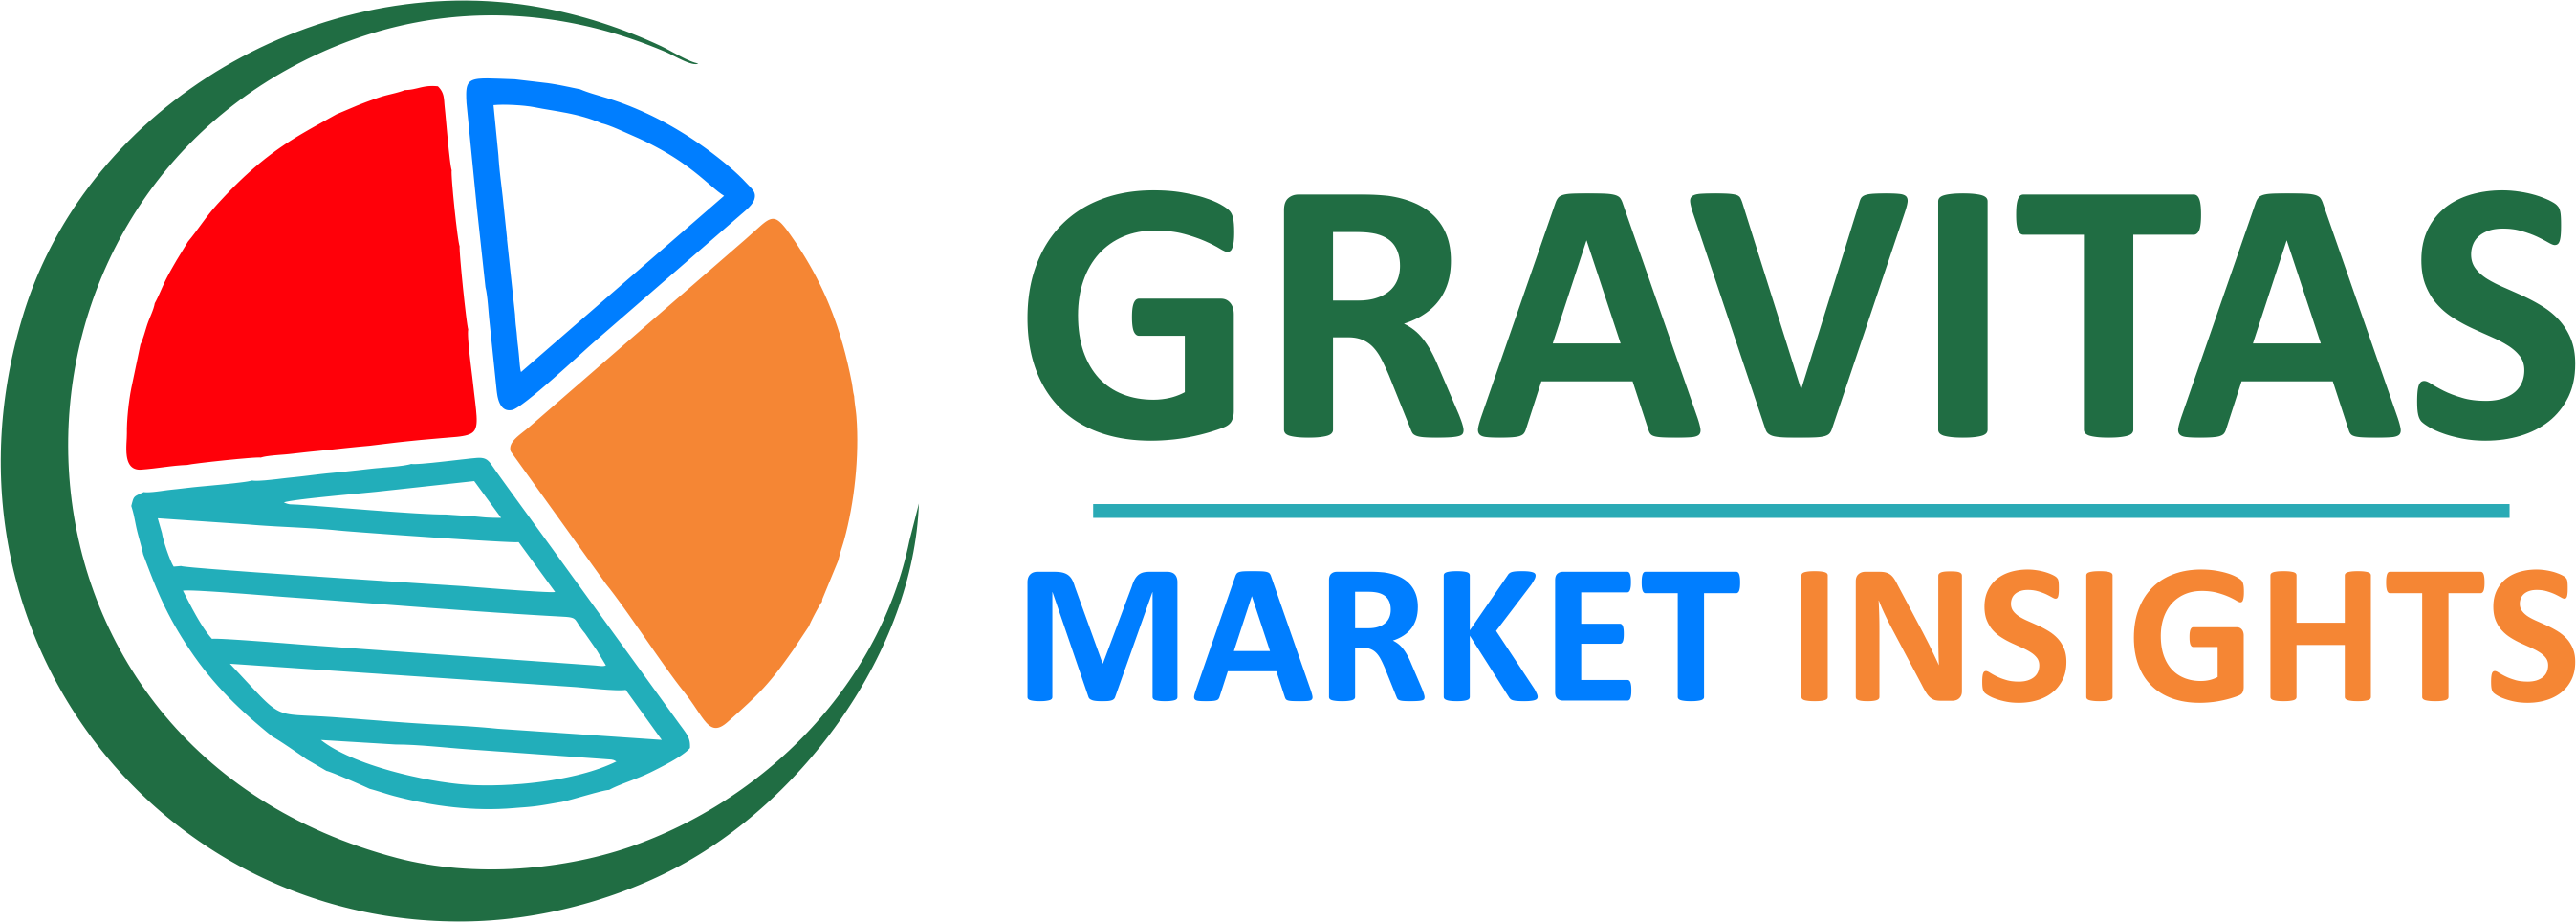 Gravitas Market Insights.